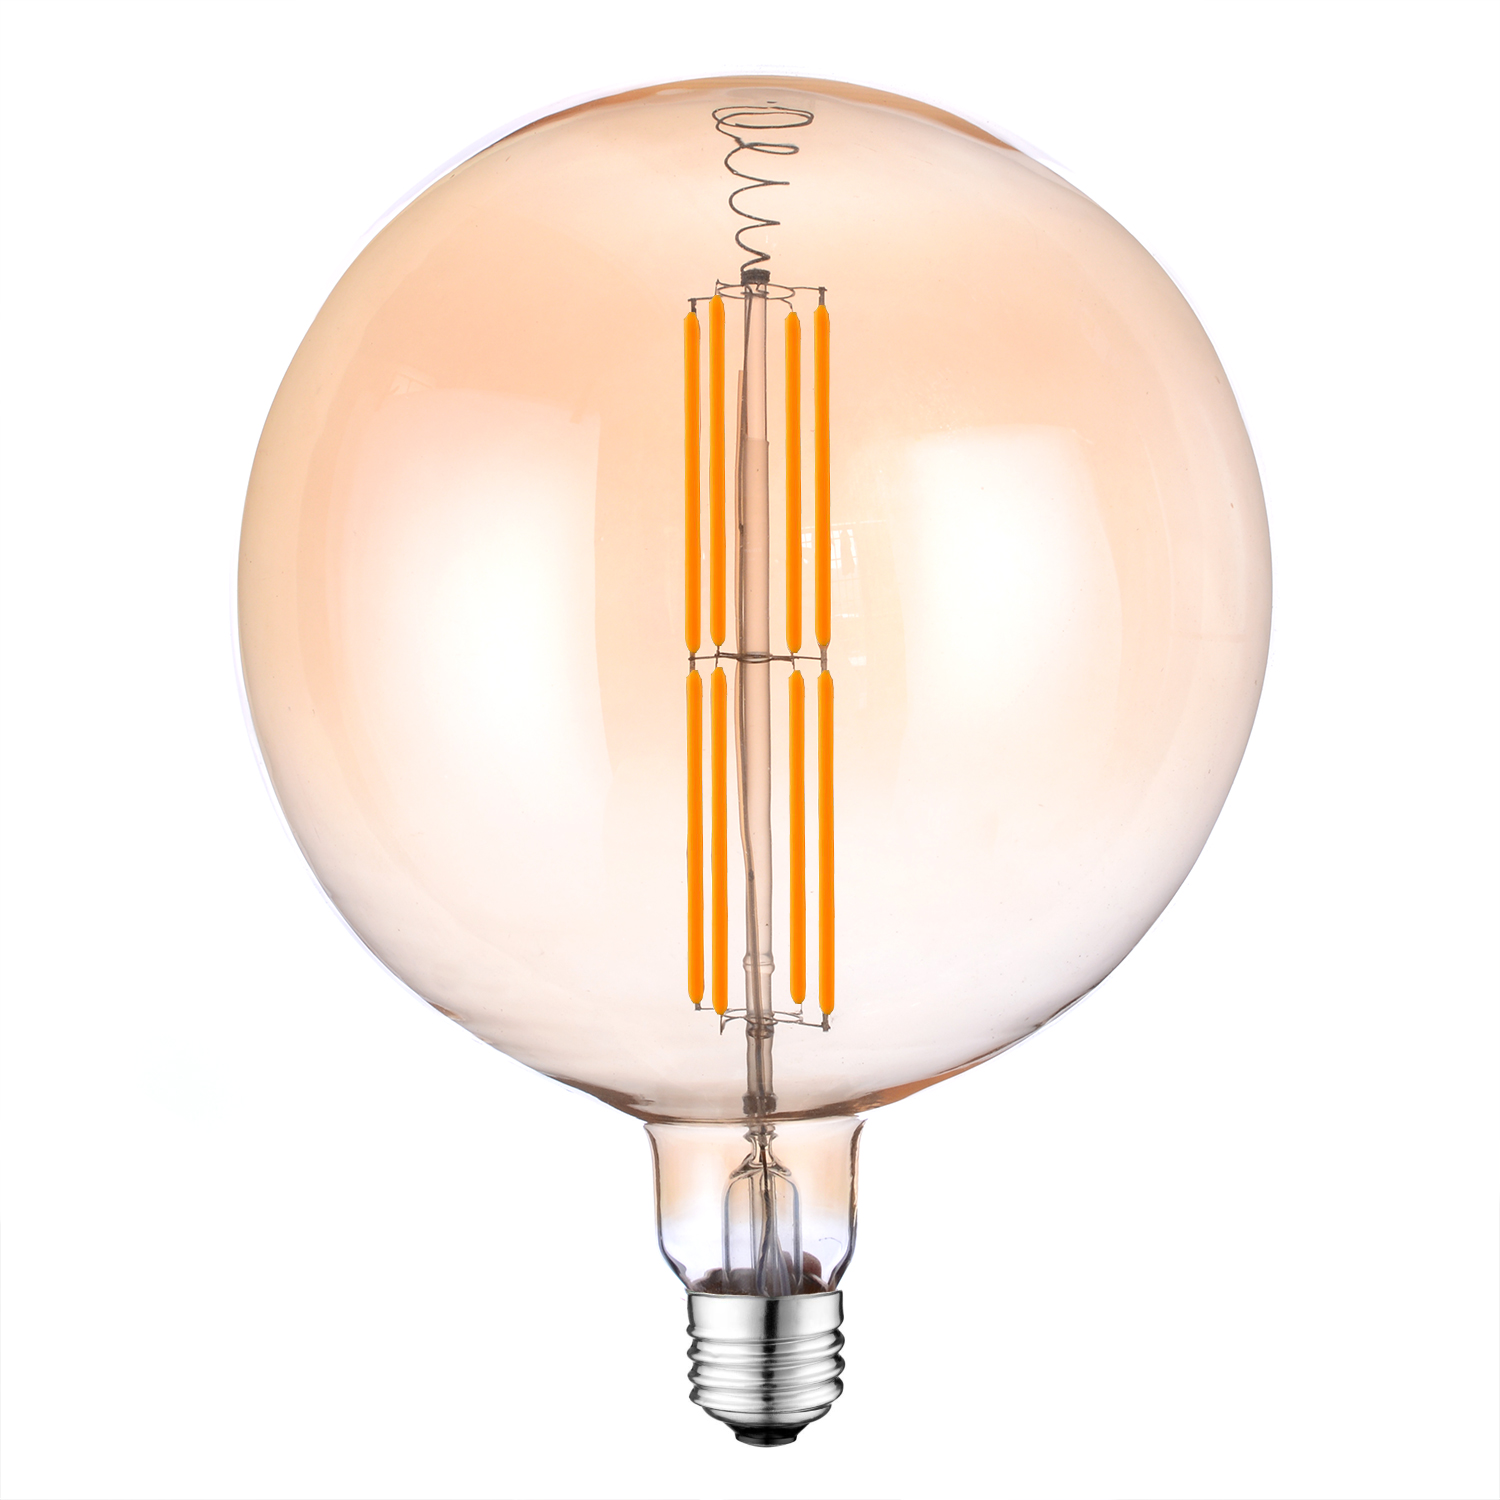 G180 LED Filament large globe light bulbs